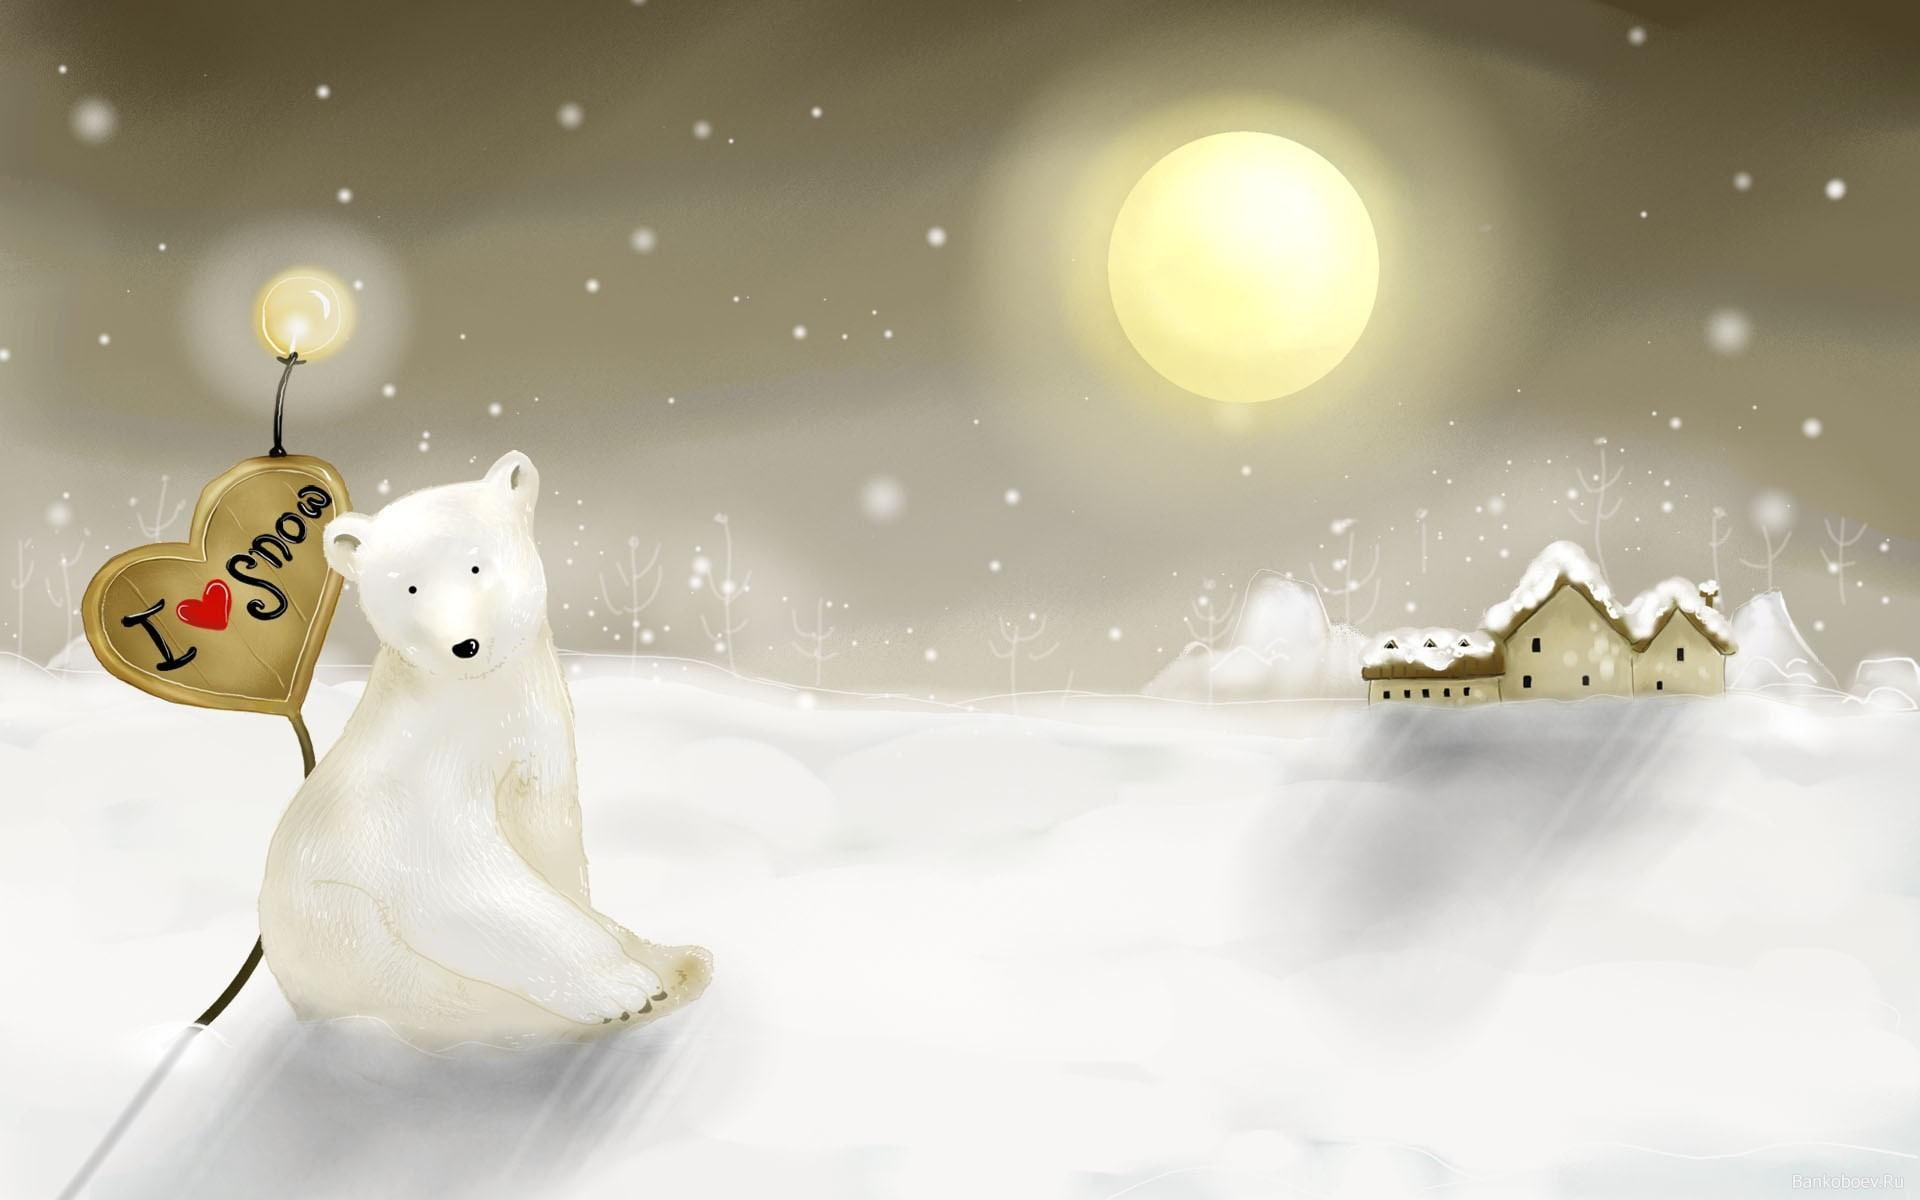 I ♥ Snow, white polar bear illustration, frozen, digital art